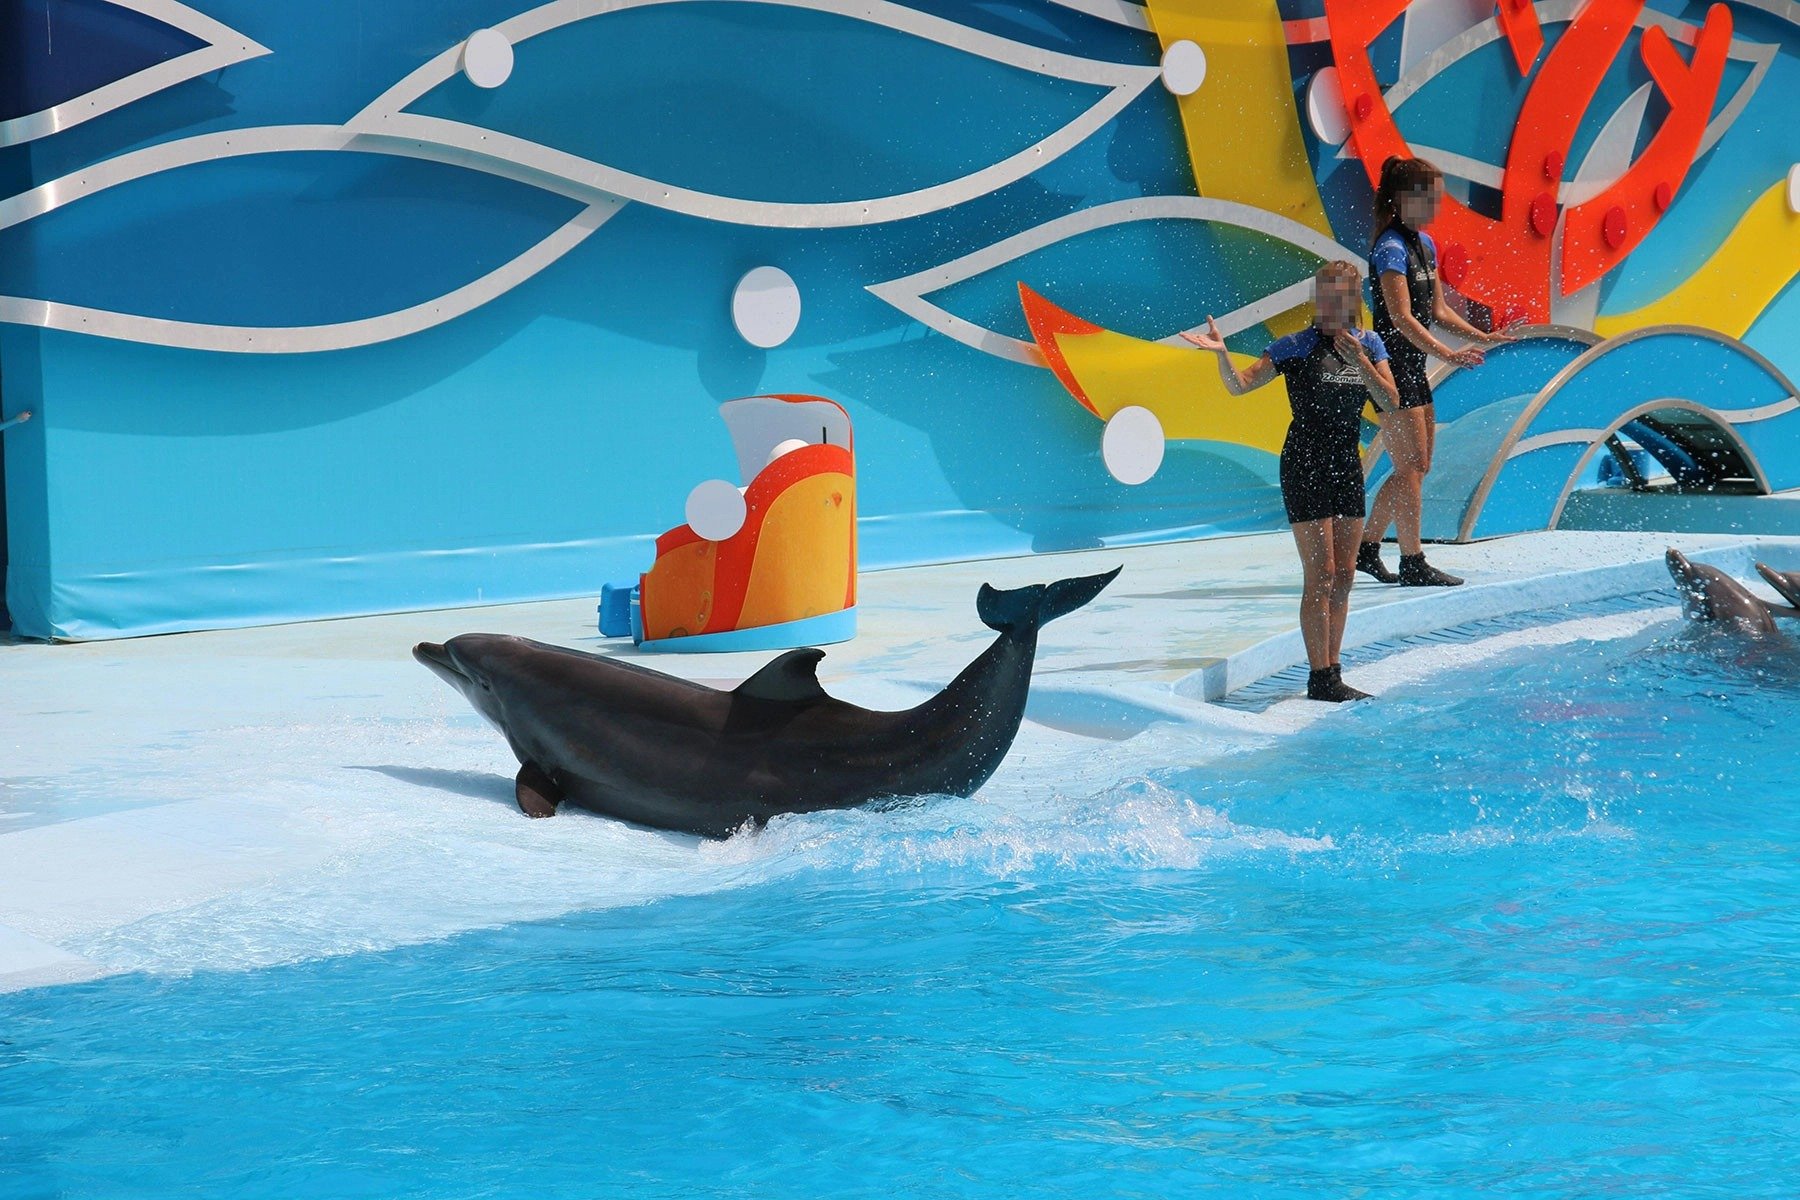 TUI tjänar pengar på delfinernas lidande